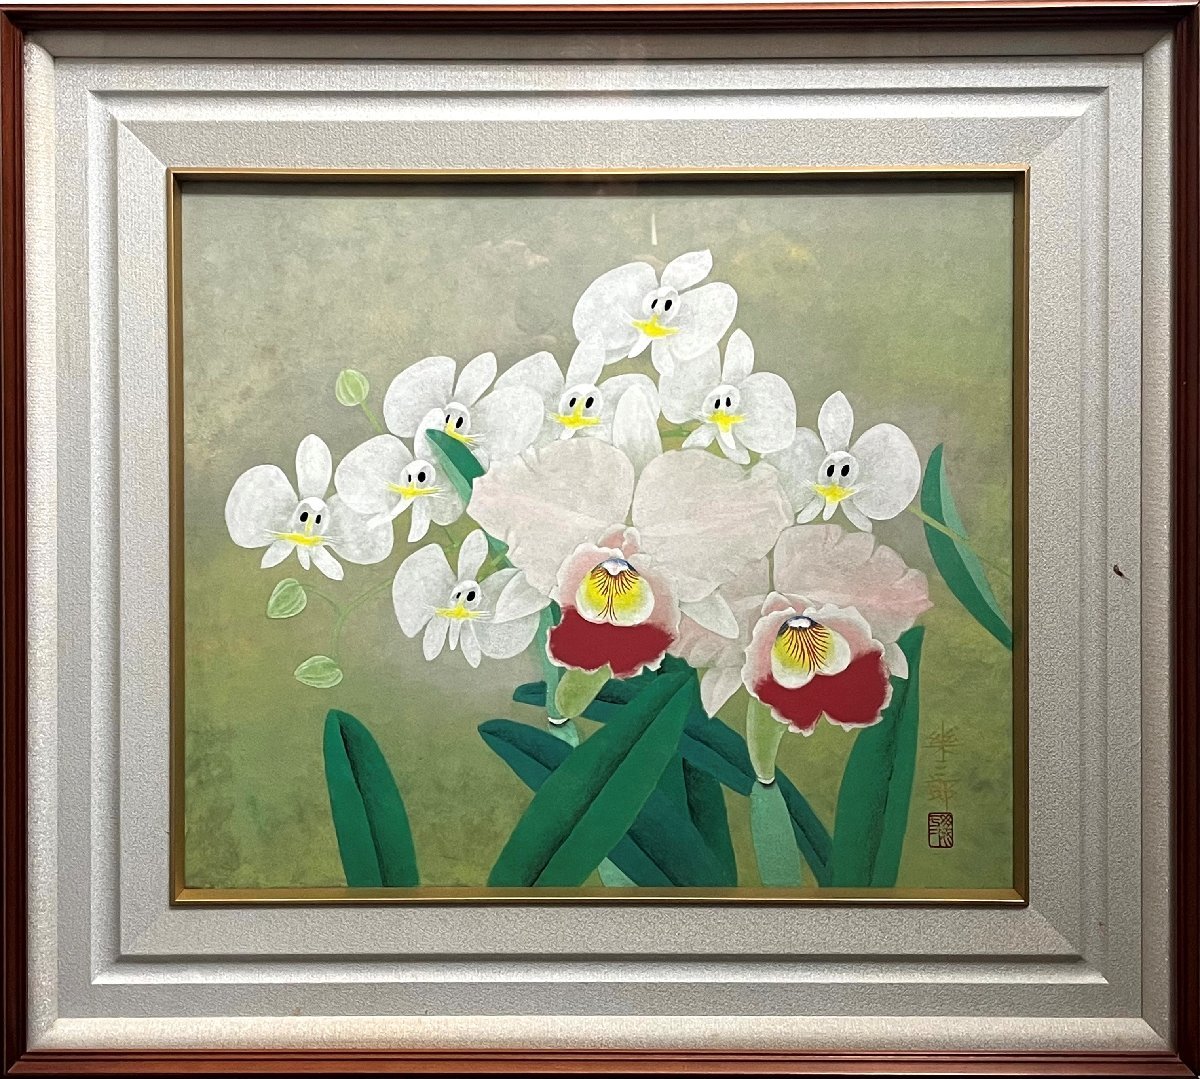 Fehler:501, Malerei, Japanische Malerei, Blumen und Vögel, Tierwelt